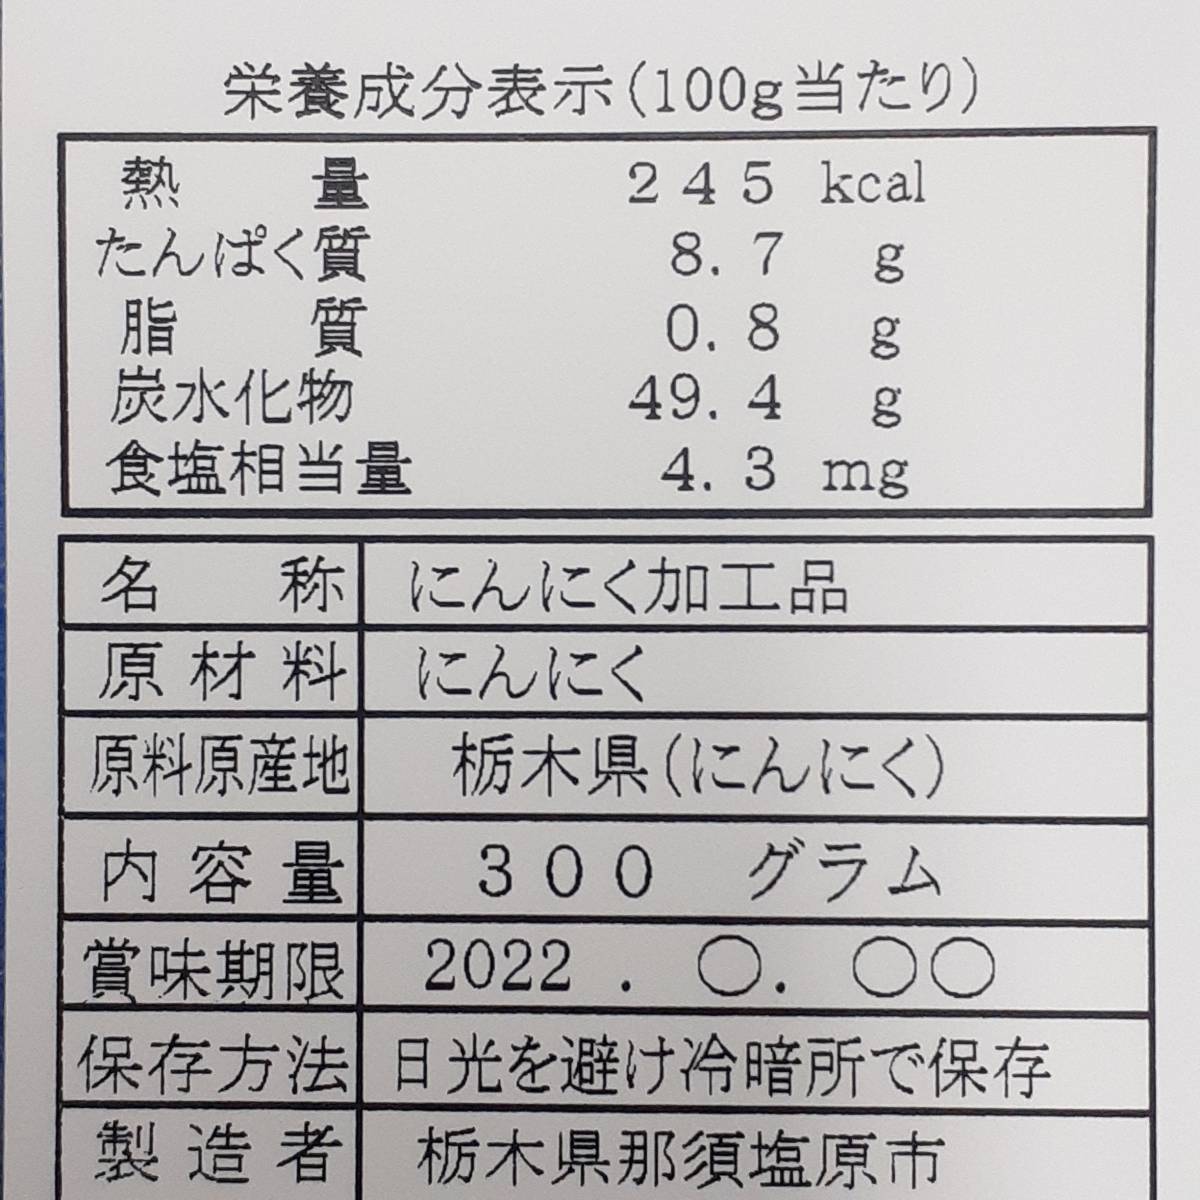  чёрный чеснок 600g добродетель для упаковка нет выбор другой шарик Tochigi .. высота . производство белый шесть одна сторона 